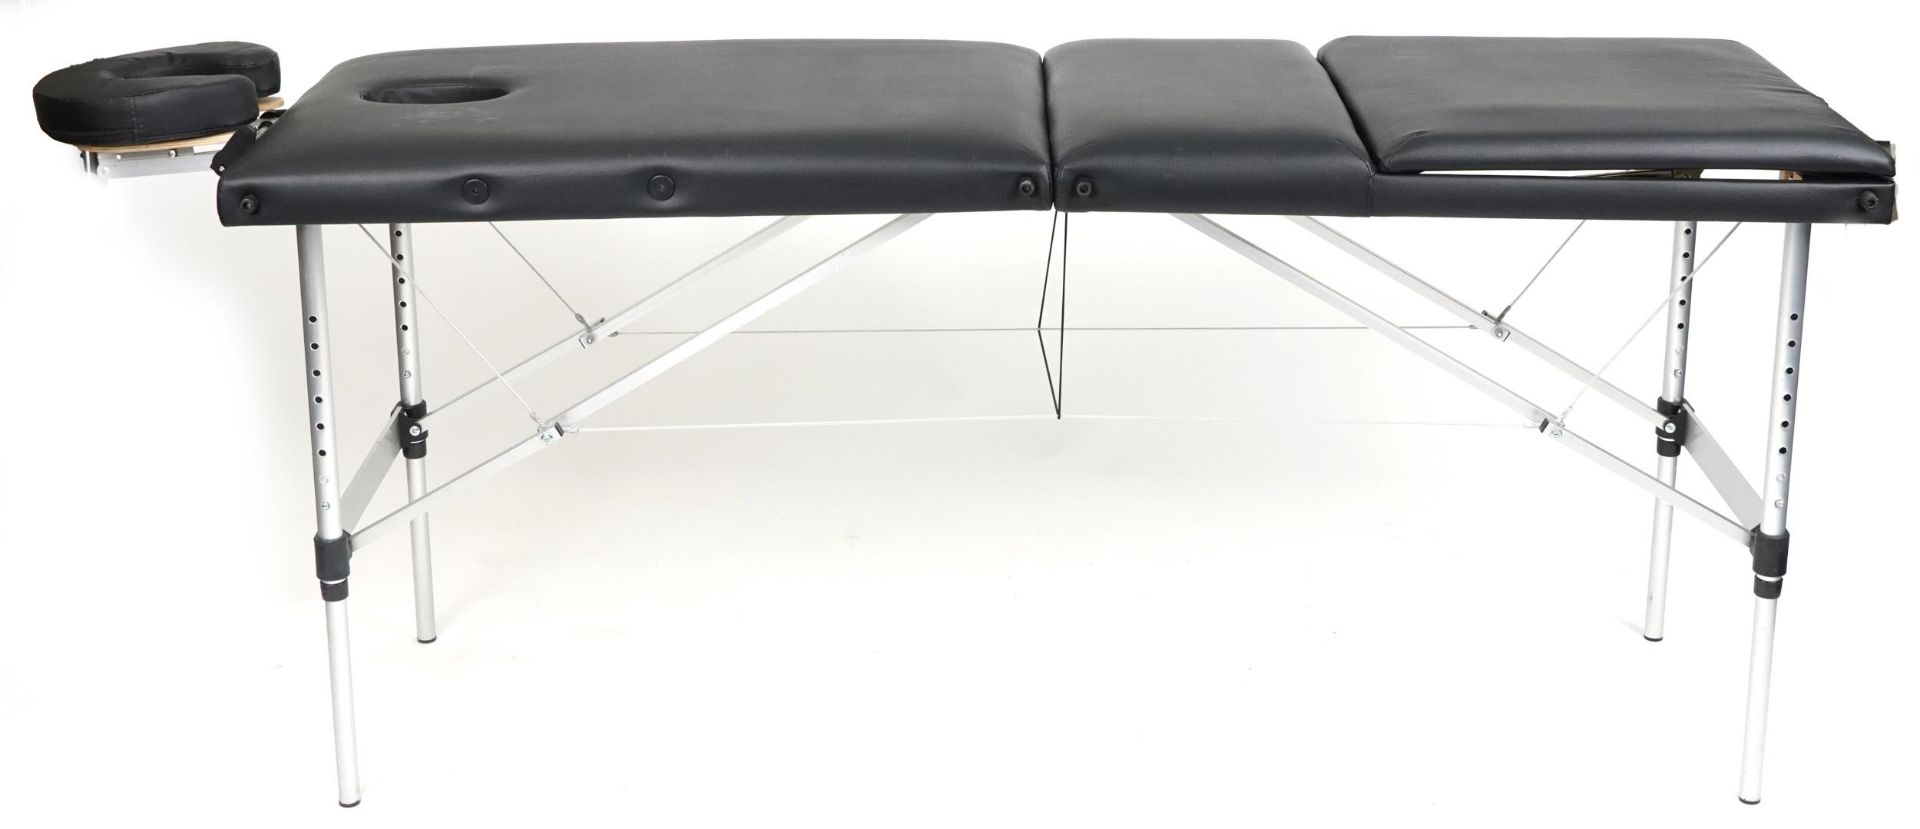 Folding aluminium and black leatherette massage table with protective bag, 83cm H x 184cm W x 59cm D - Bild 5 aus 6